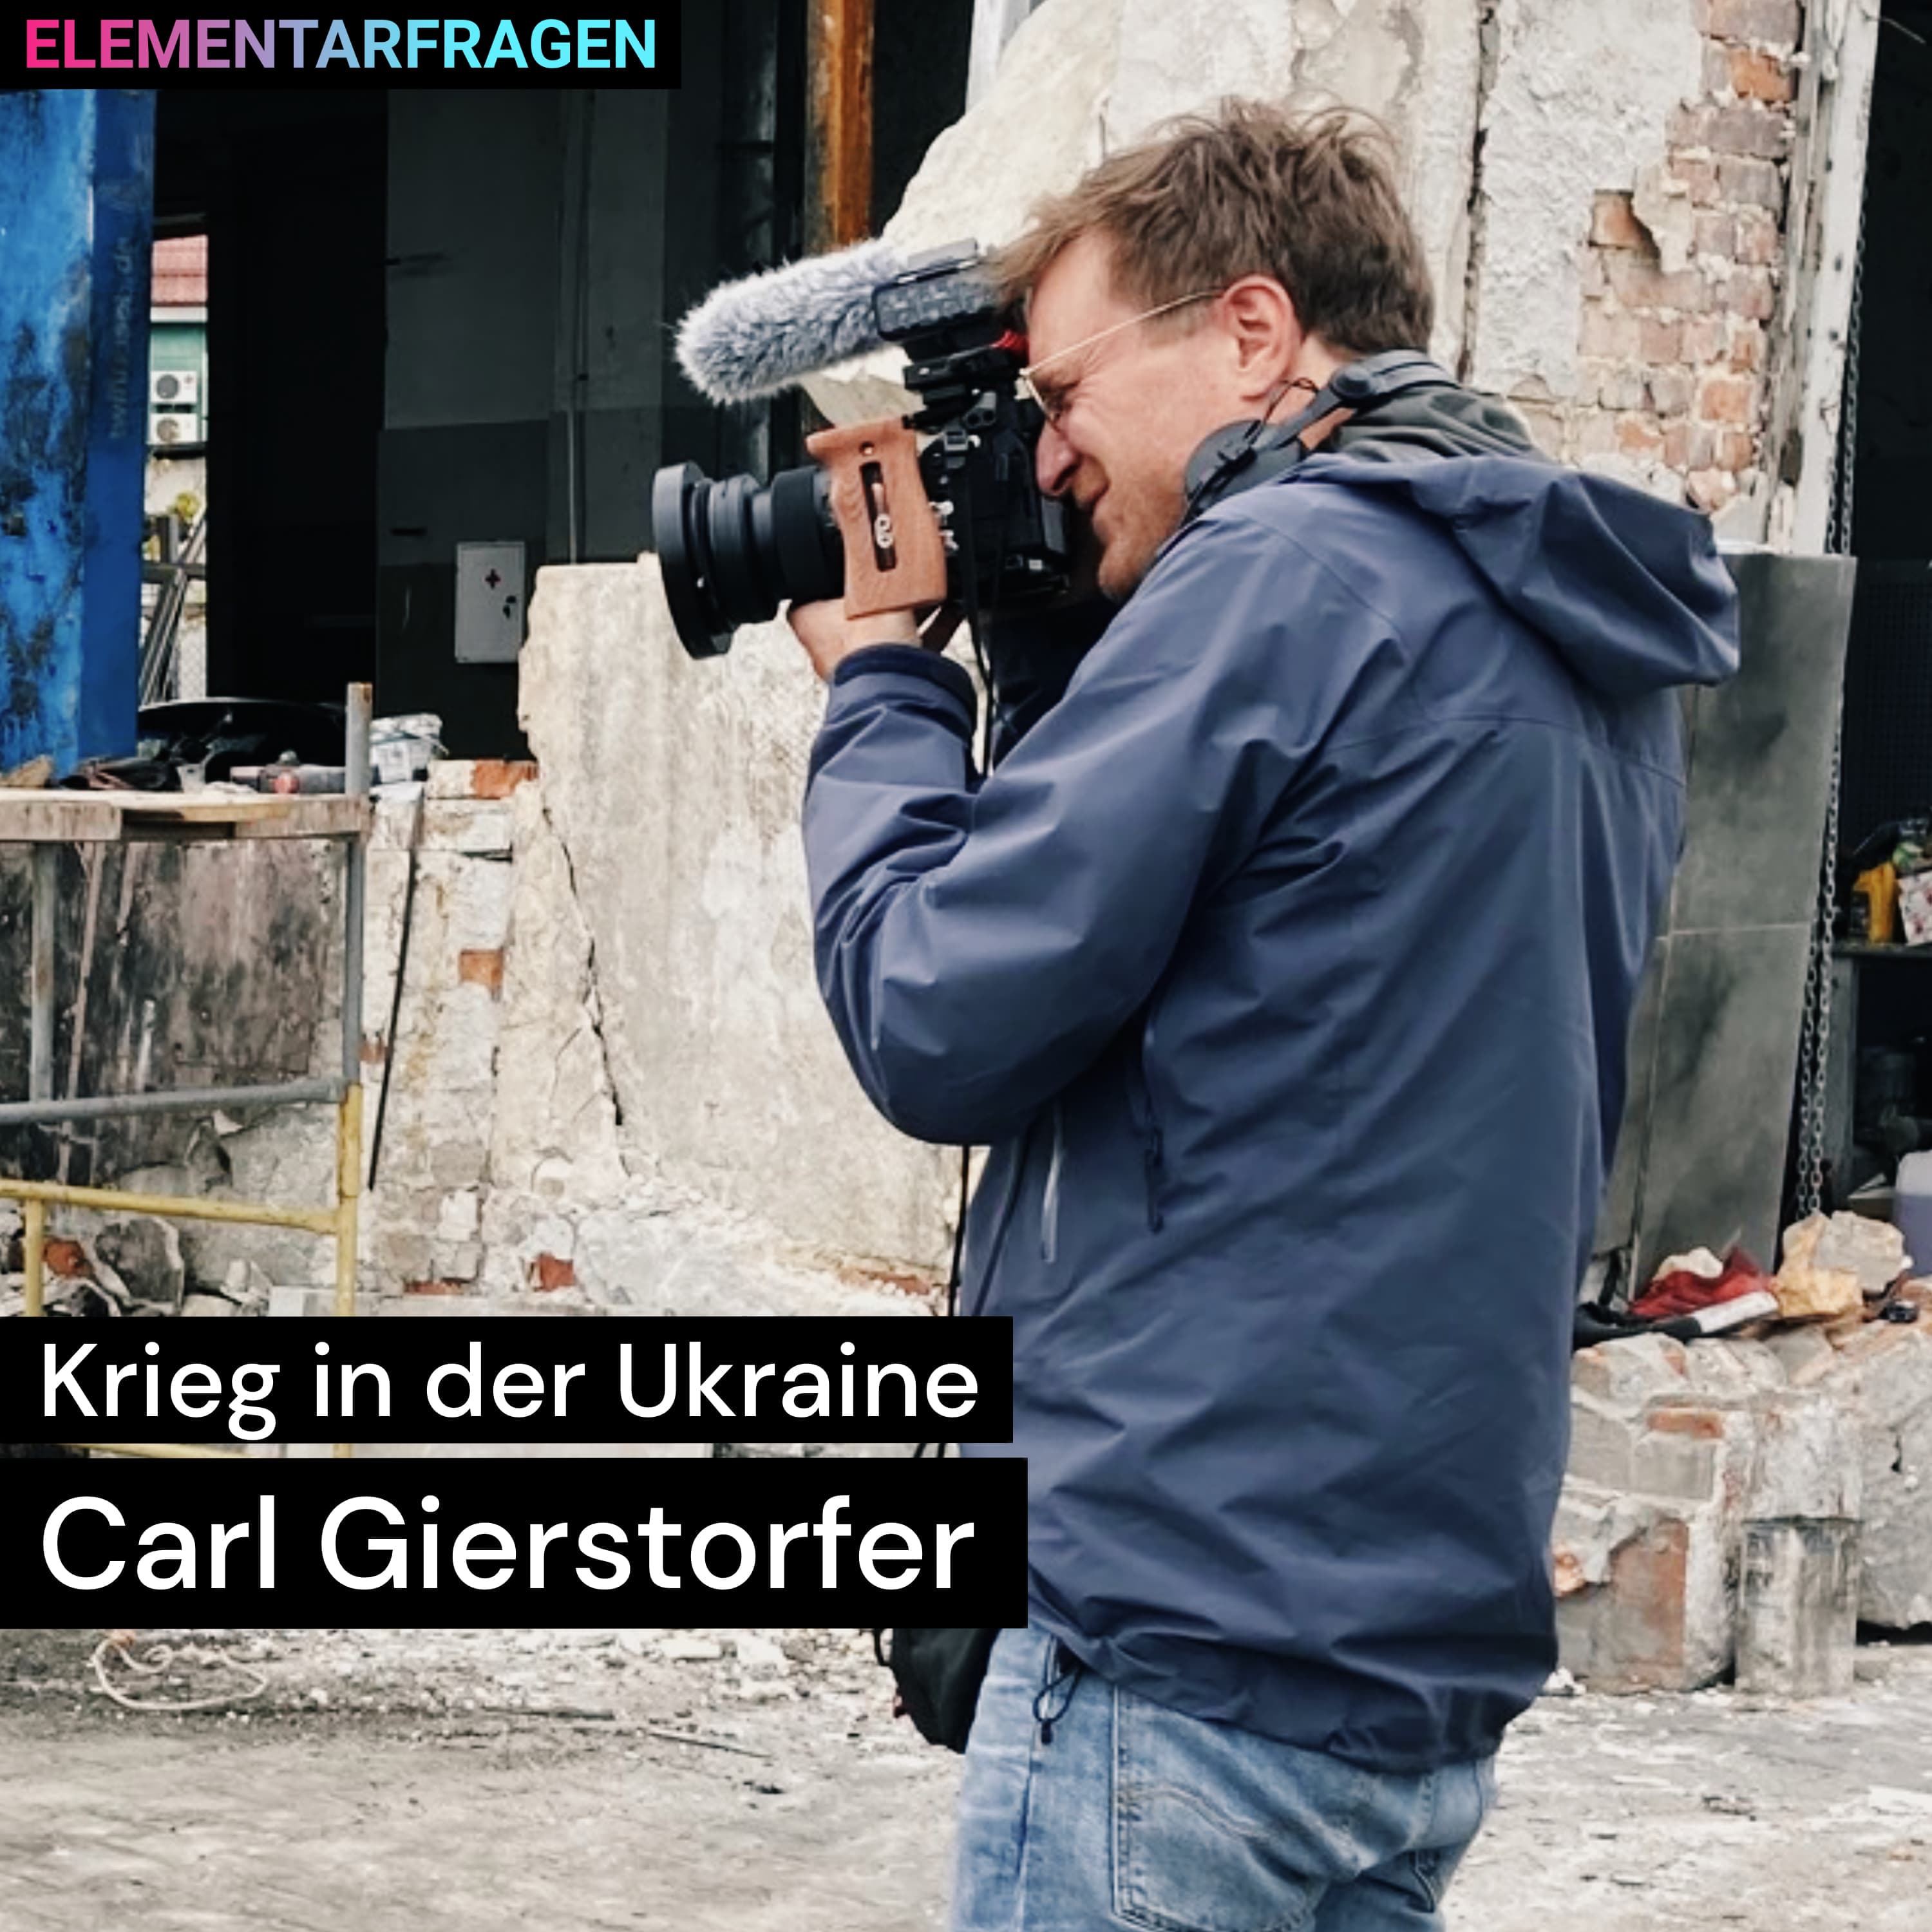 Krieg in der Ukraine: Carl Gierstorfer | Elementarfragen